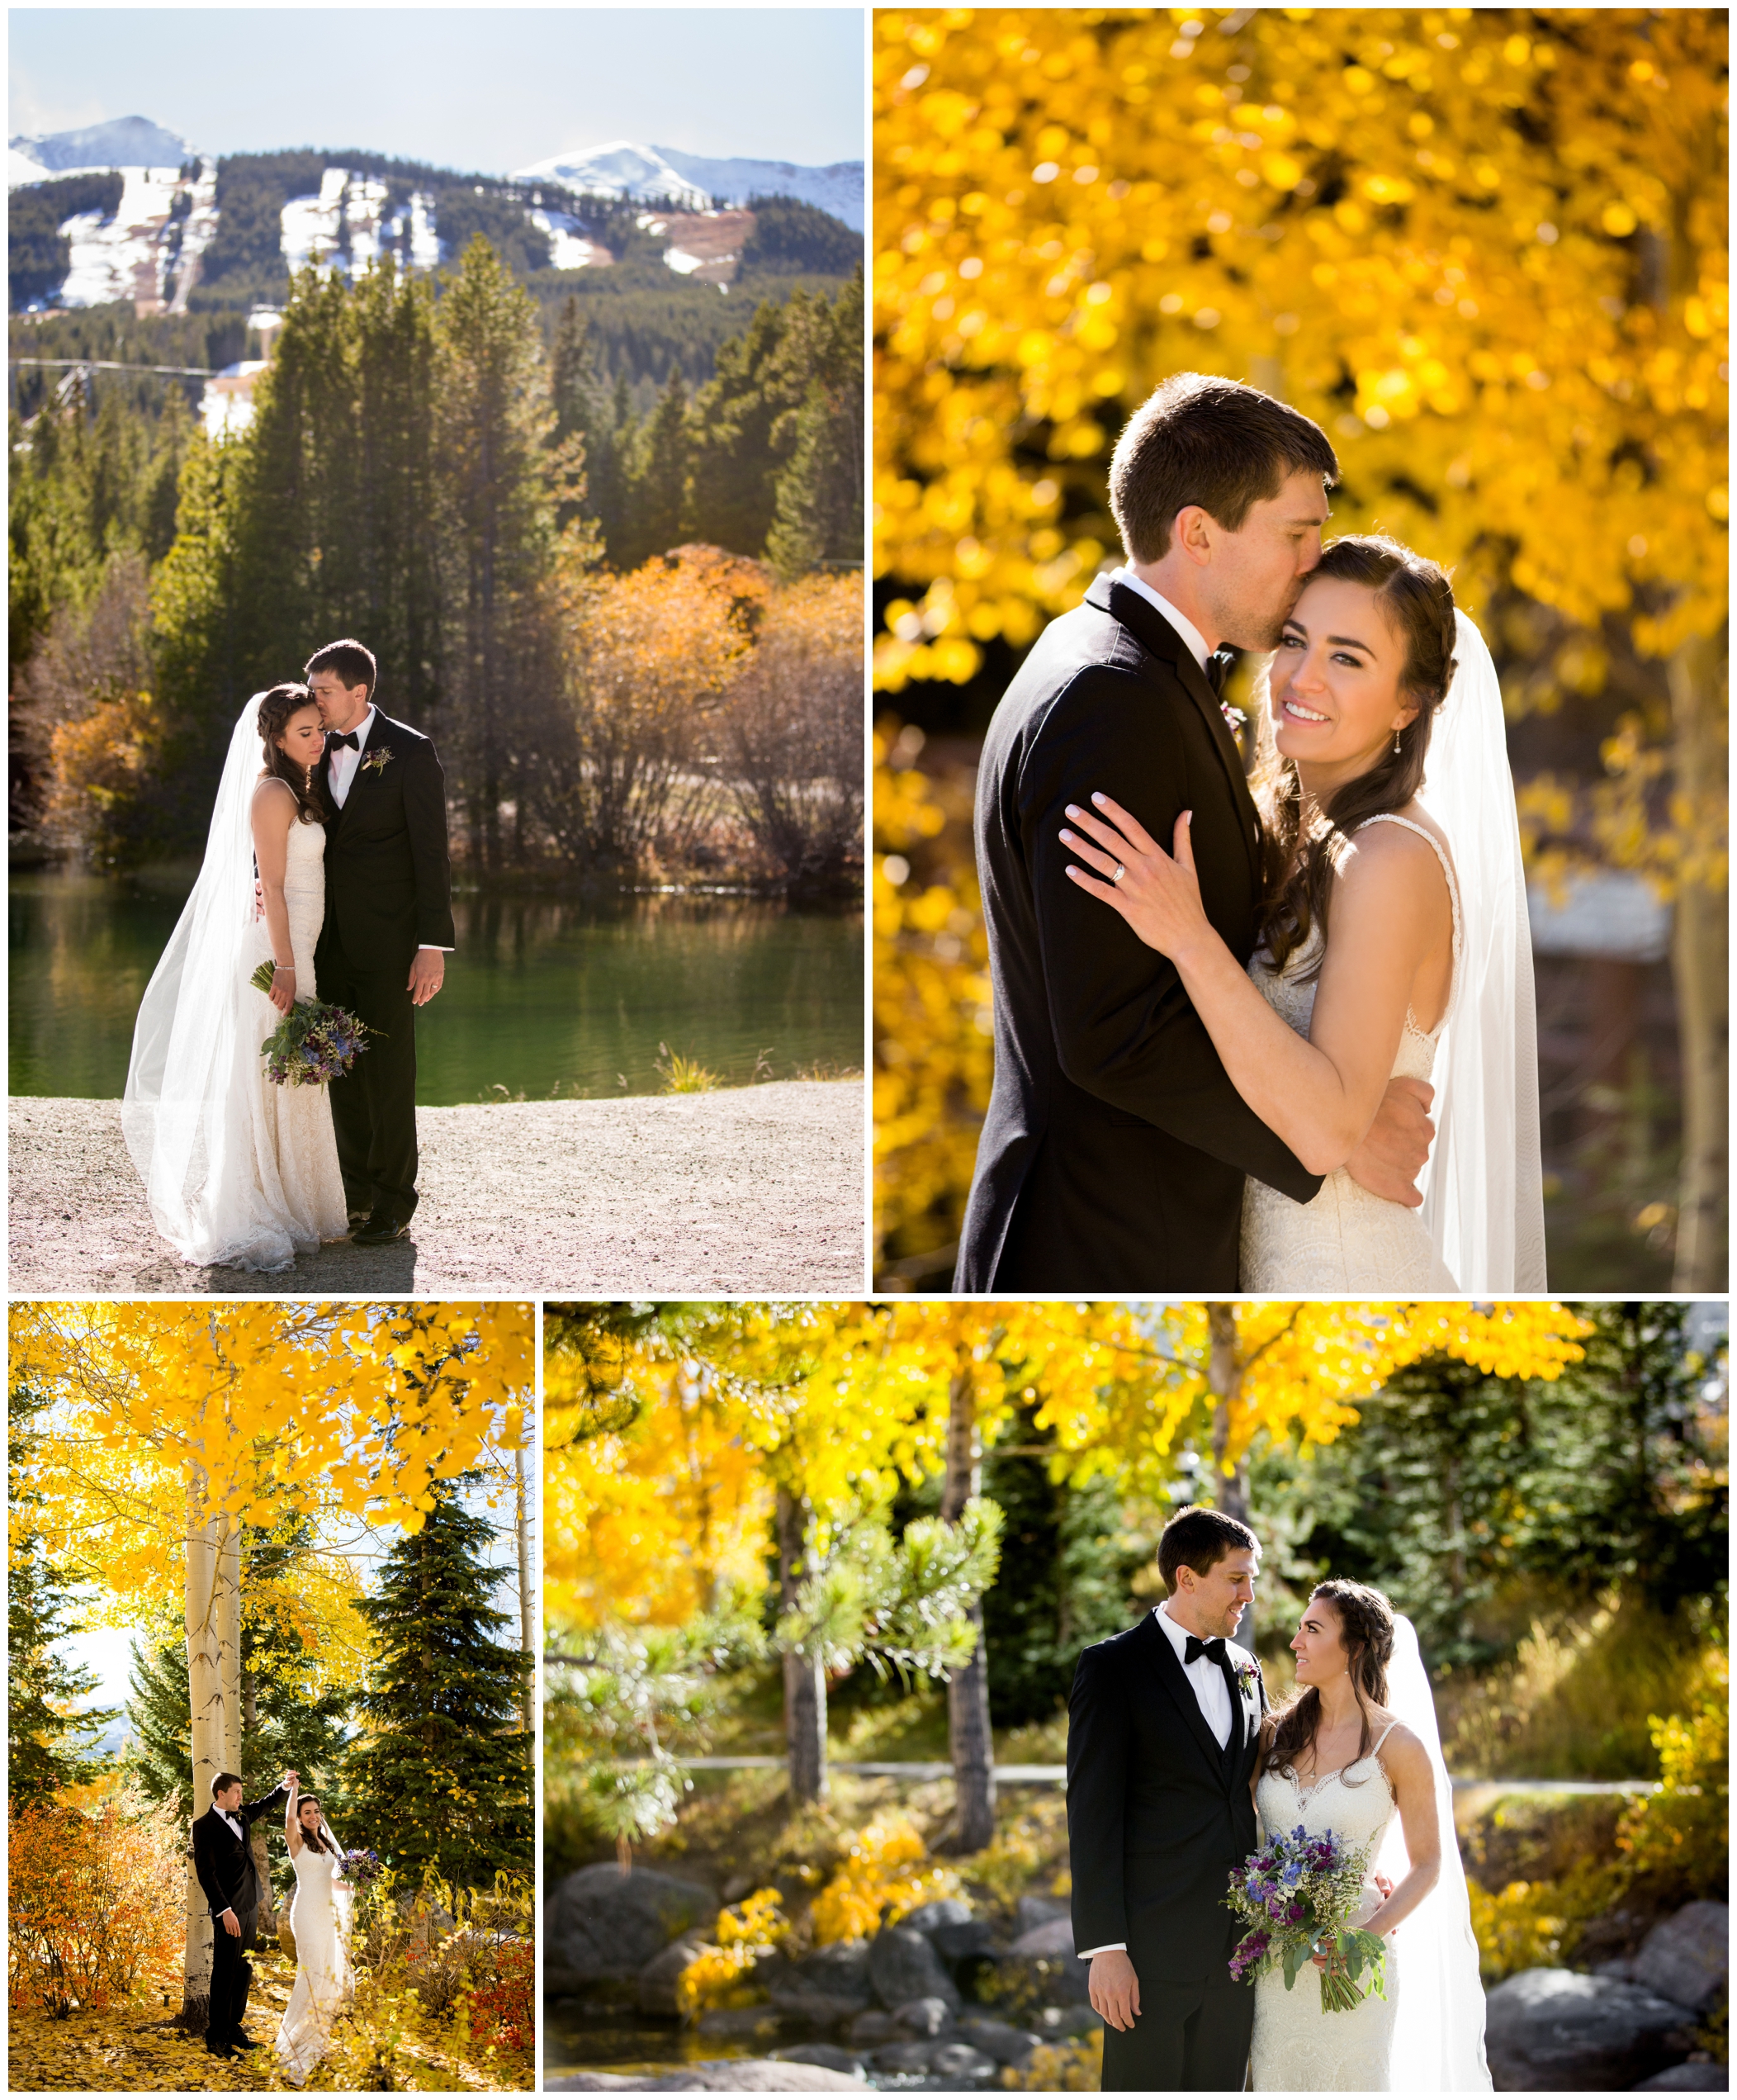 Colorado mountain wedding photos by Breckenridge photographer Plum Pretty Photography 